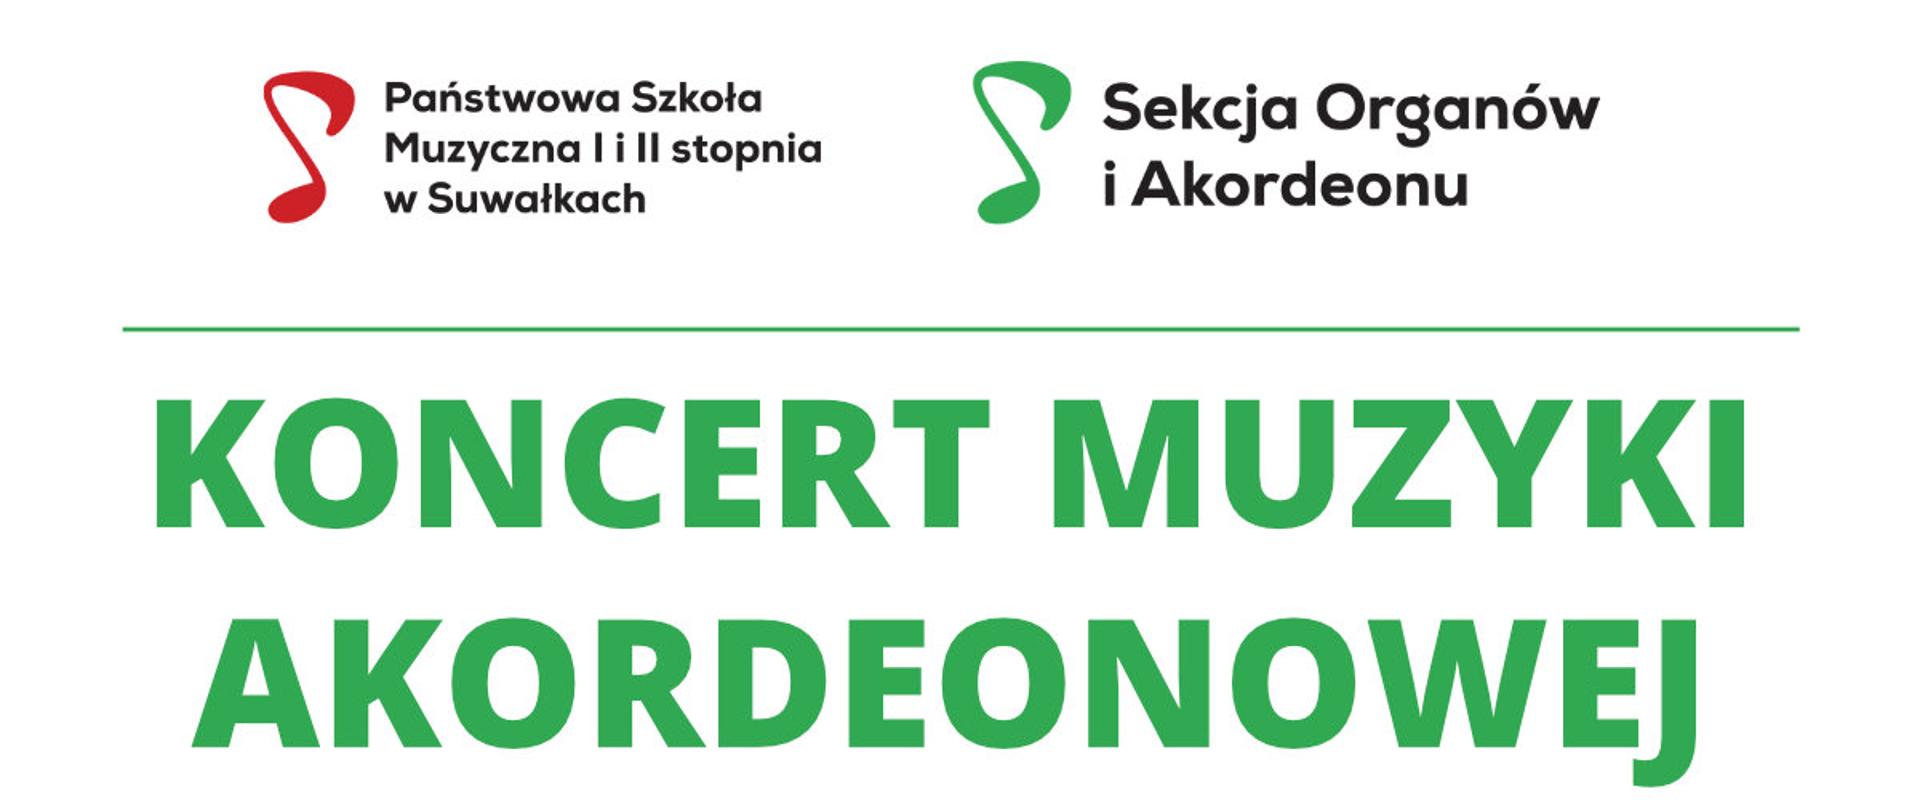 Plakat koncertu muzyki akordeonowej 17 lutego 2023 w PSM w Suwałkach (sala koncertowa). Treść plakatu na białym tle. Na górze logotypy na dole zdjęcie fragmentu akordeonu. 